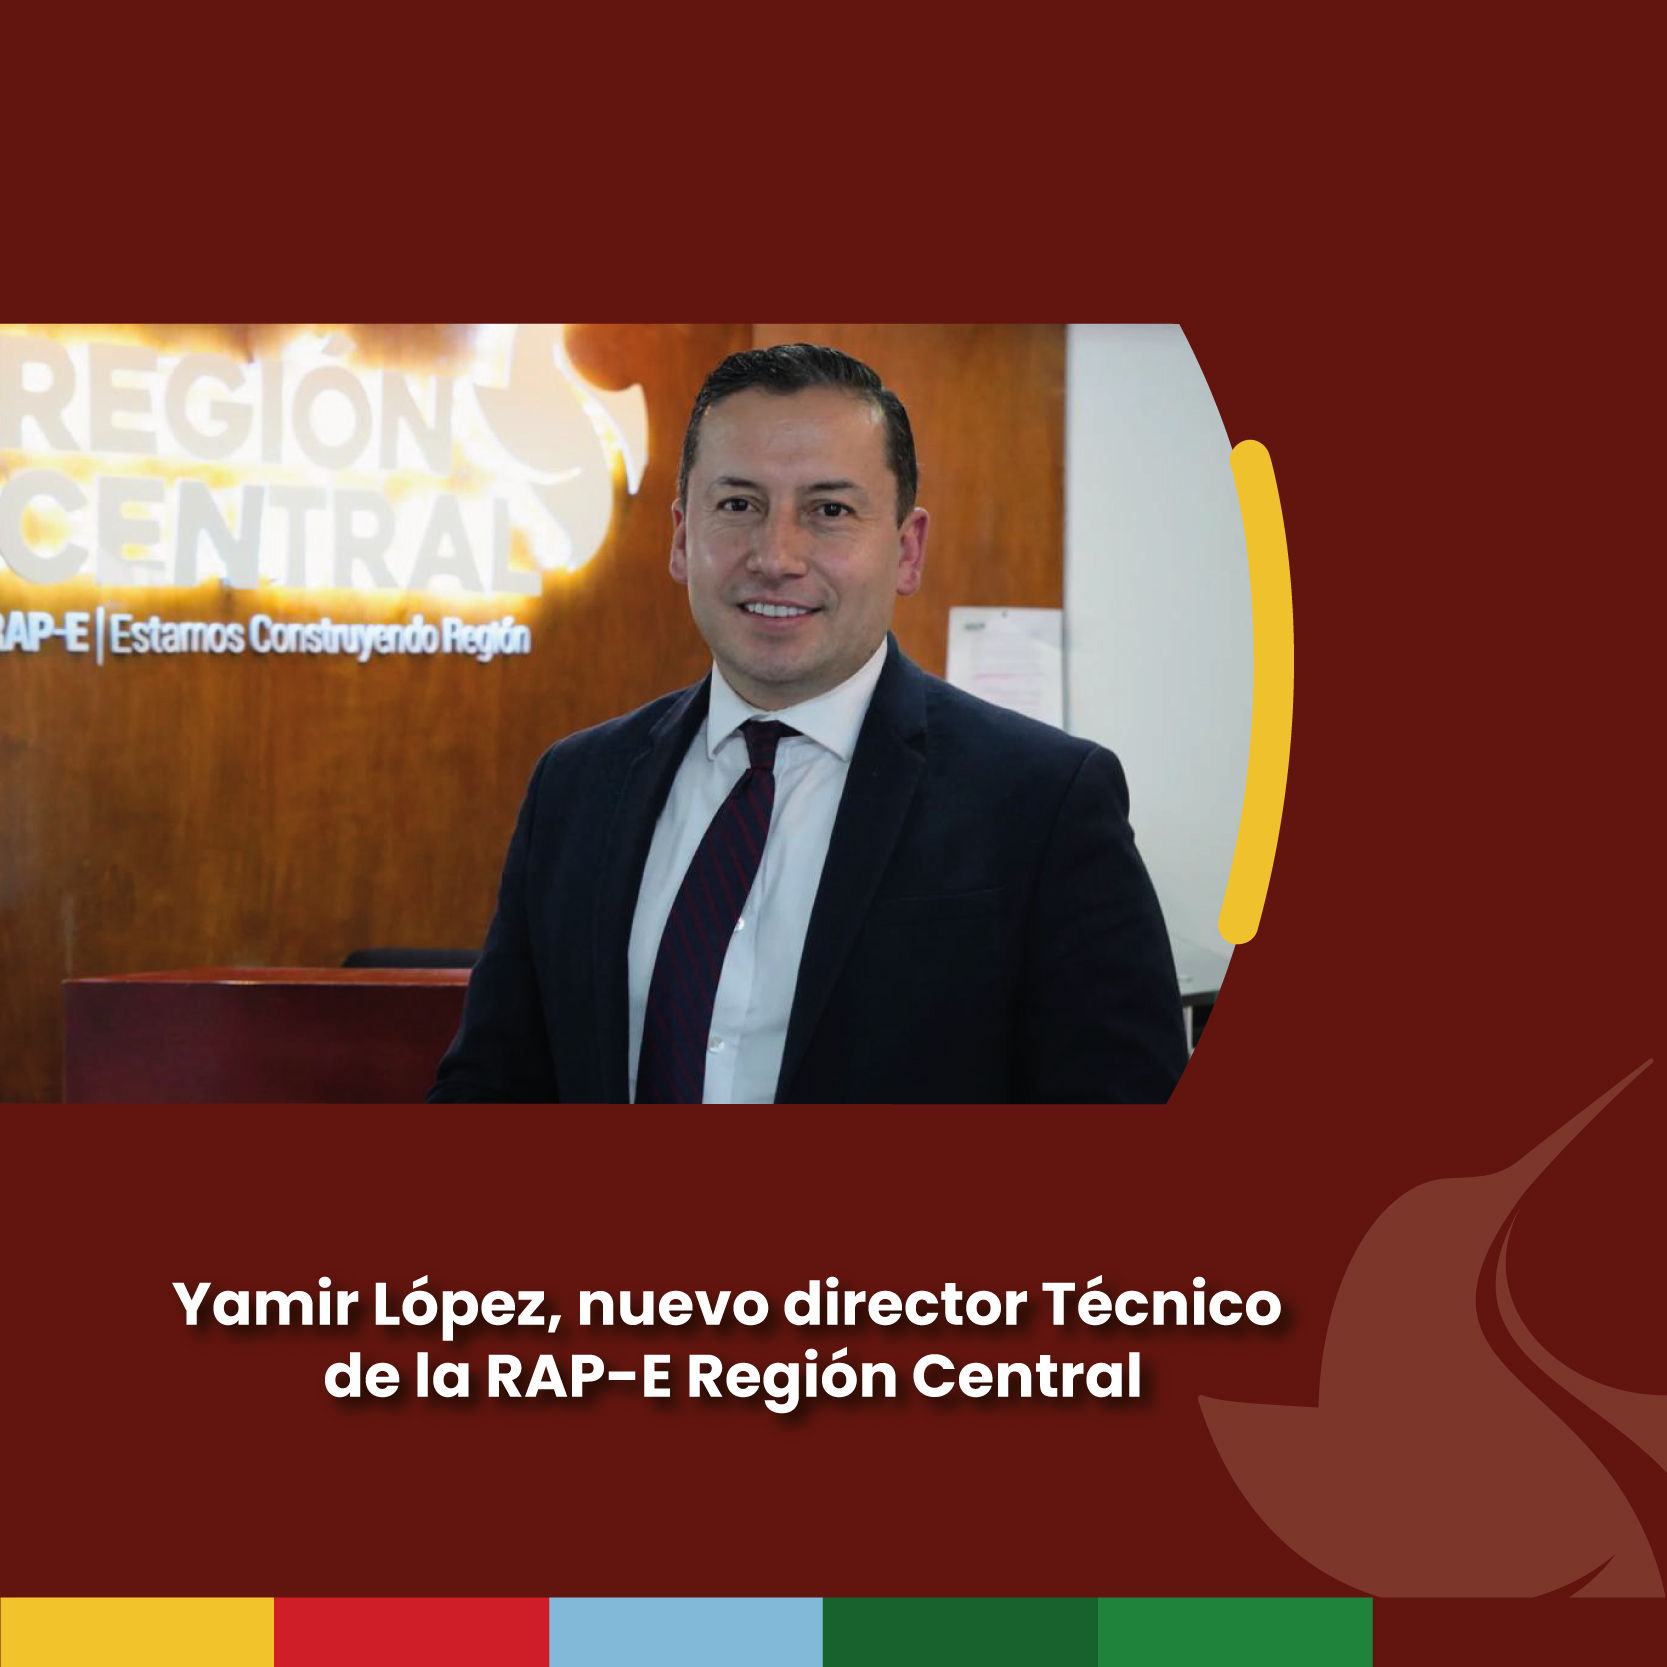 Yamir López, nuevo director Técnico de la RAP-E Región Central